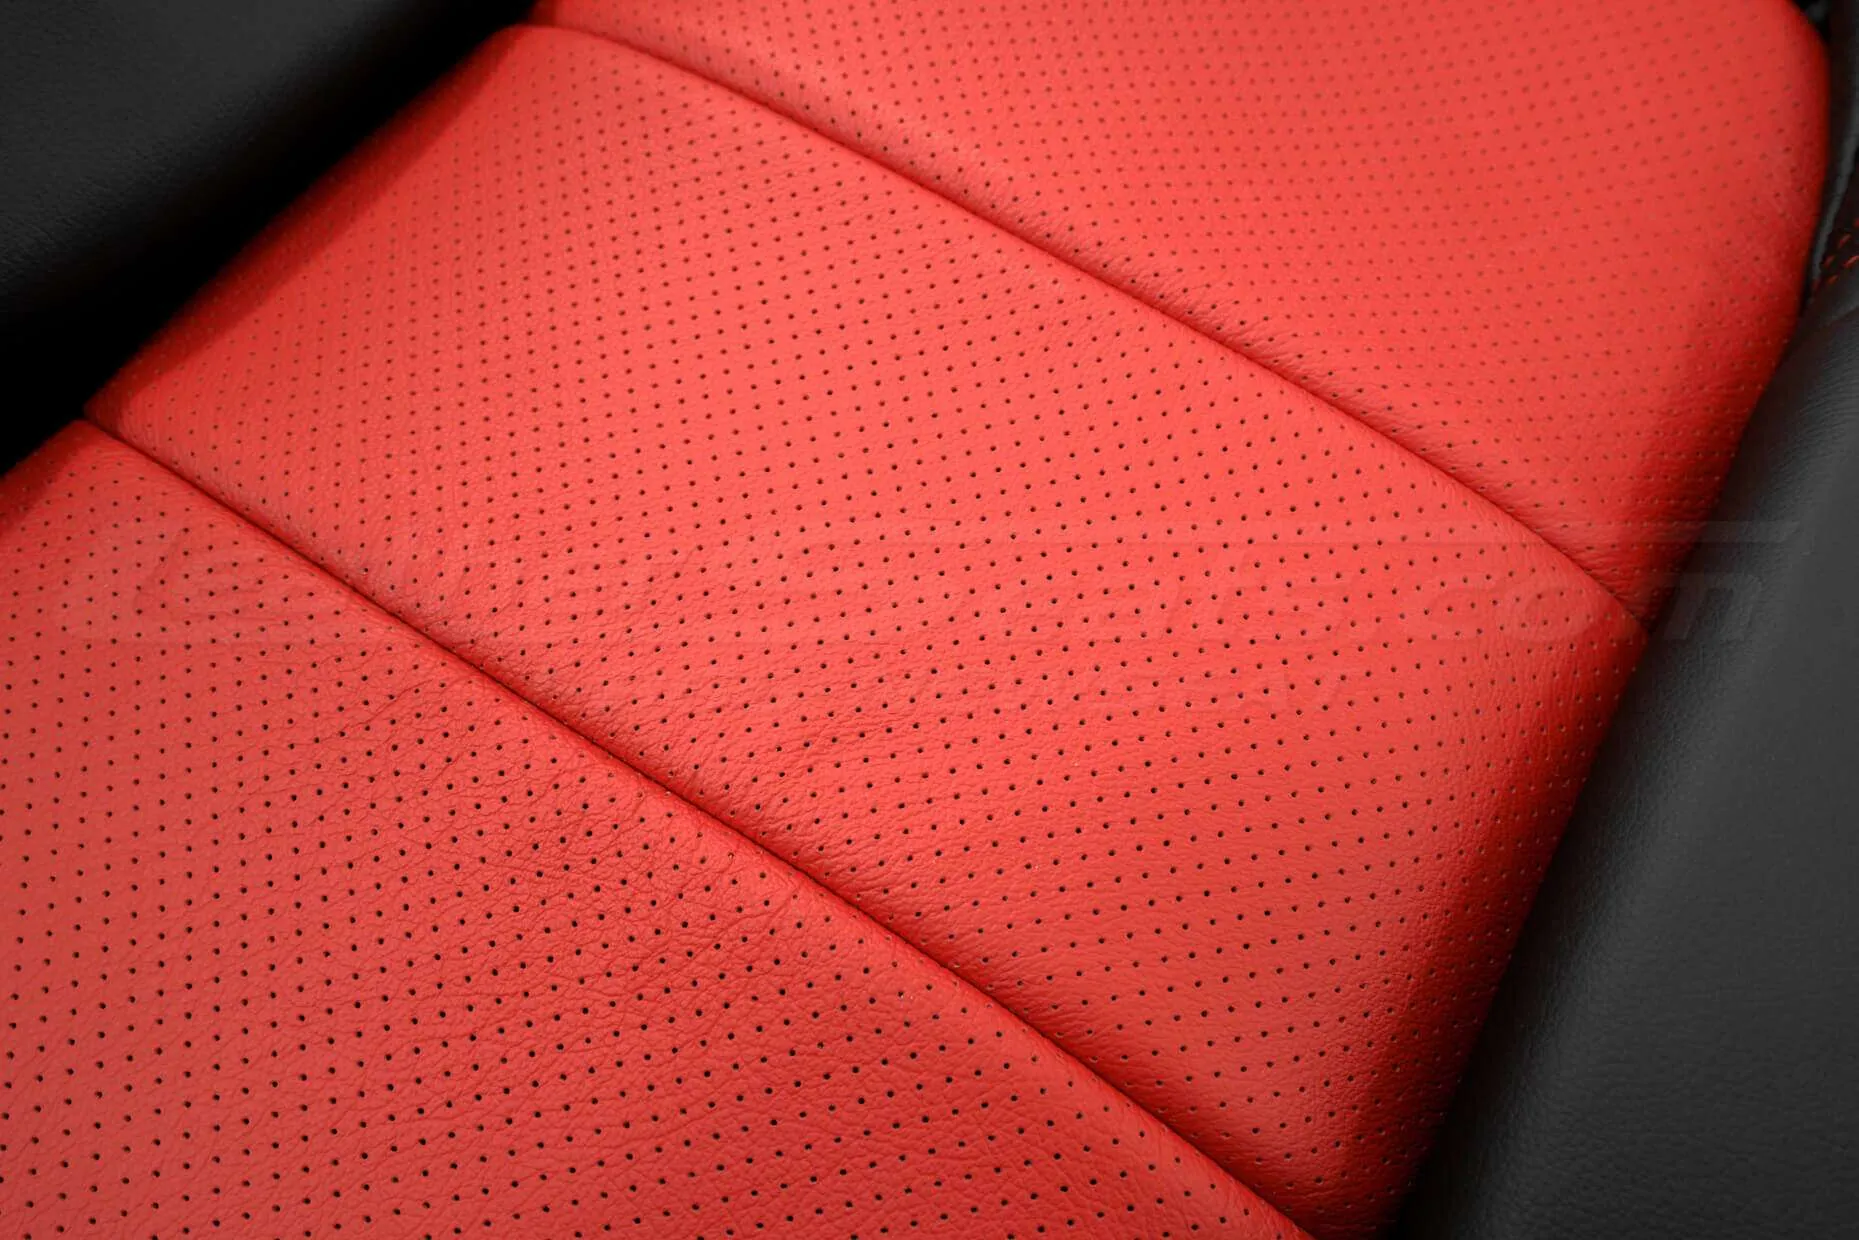 05-13 Chevrolet Corvette Upholstery Kit - Black & Bright Red - Perforated Insert